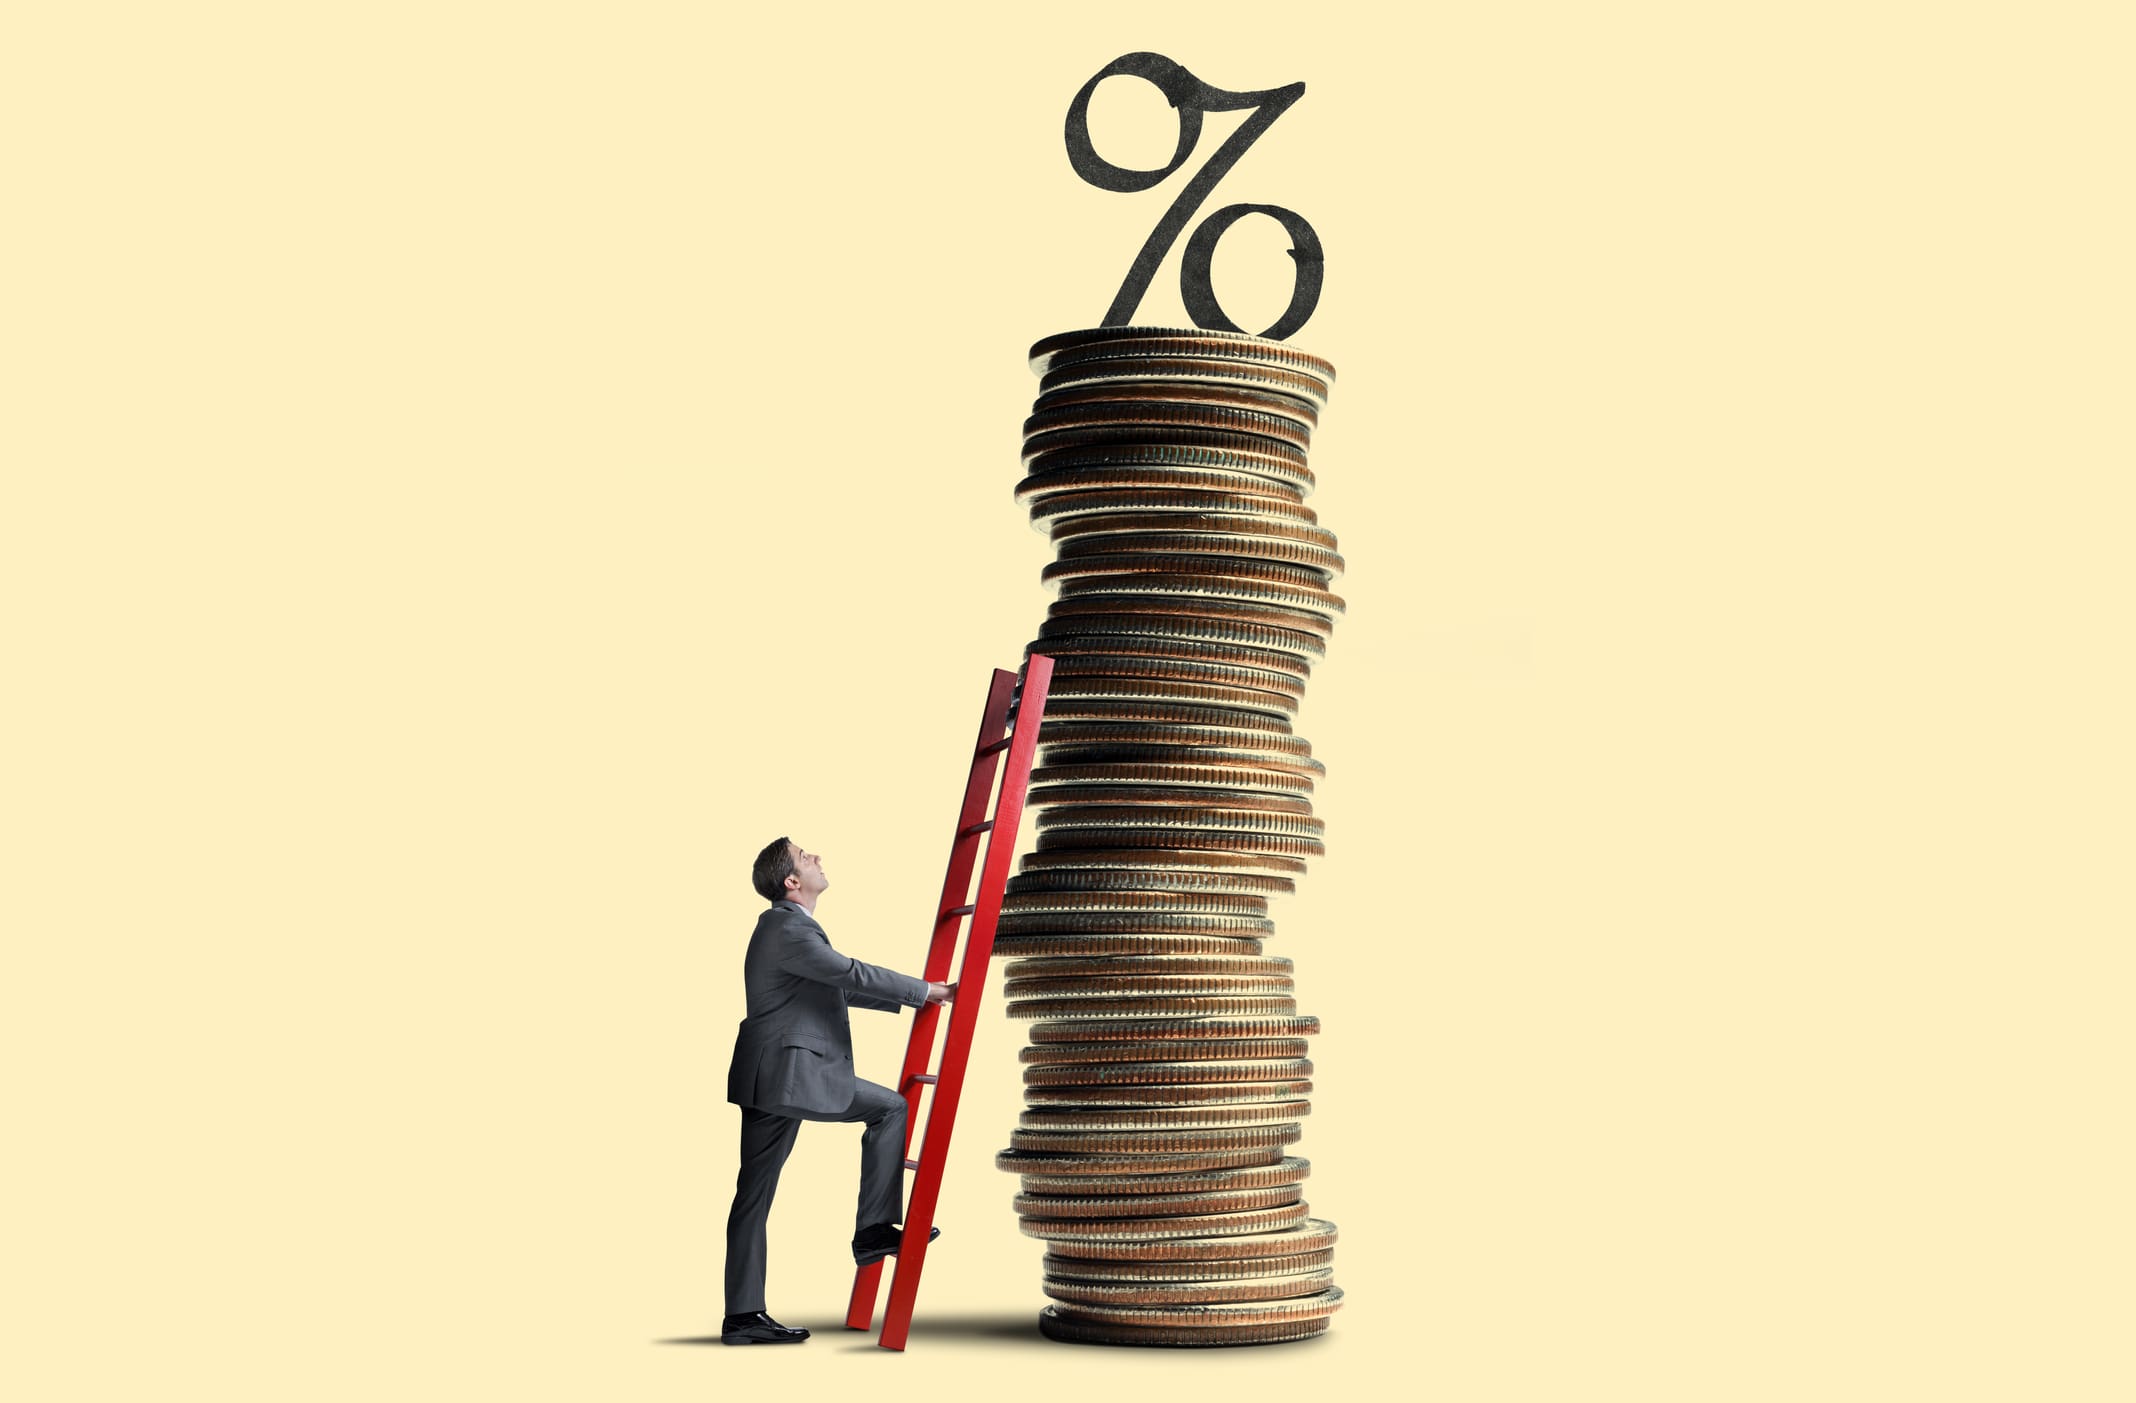 Illusztráció: egy öltönyös férfi mászik fel egy piros létrán a pénzérmékből egymásra rakott csúcsra, melynek tetején van egy fekete százalékjel.